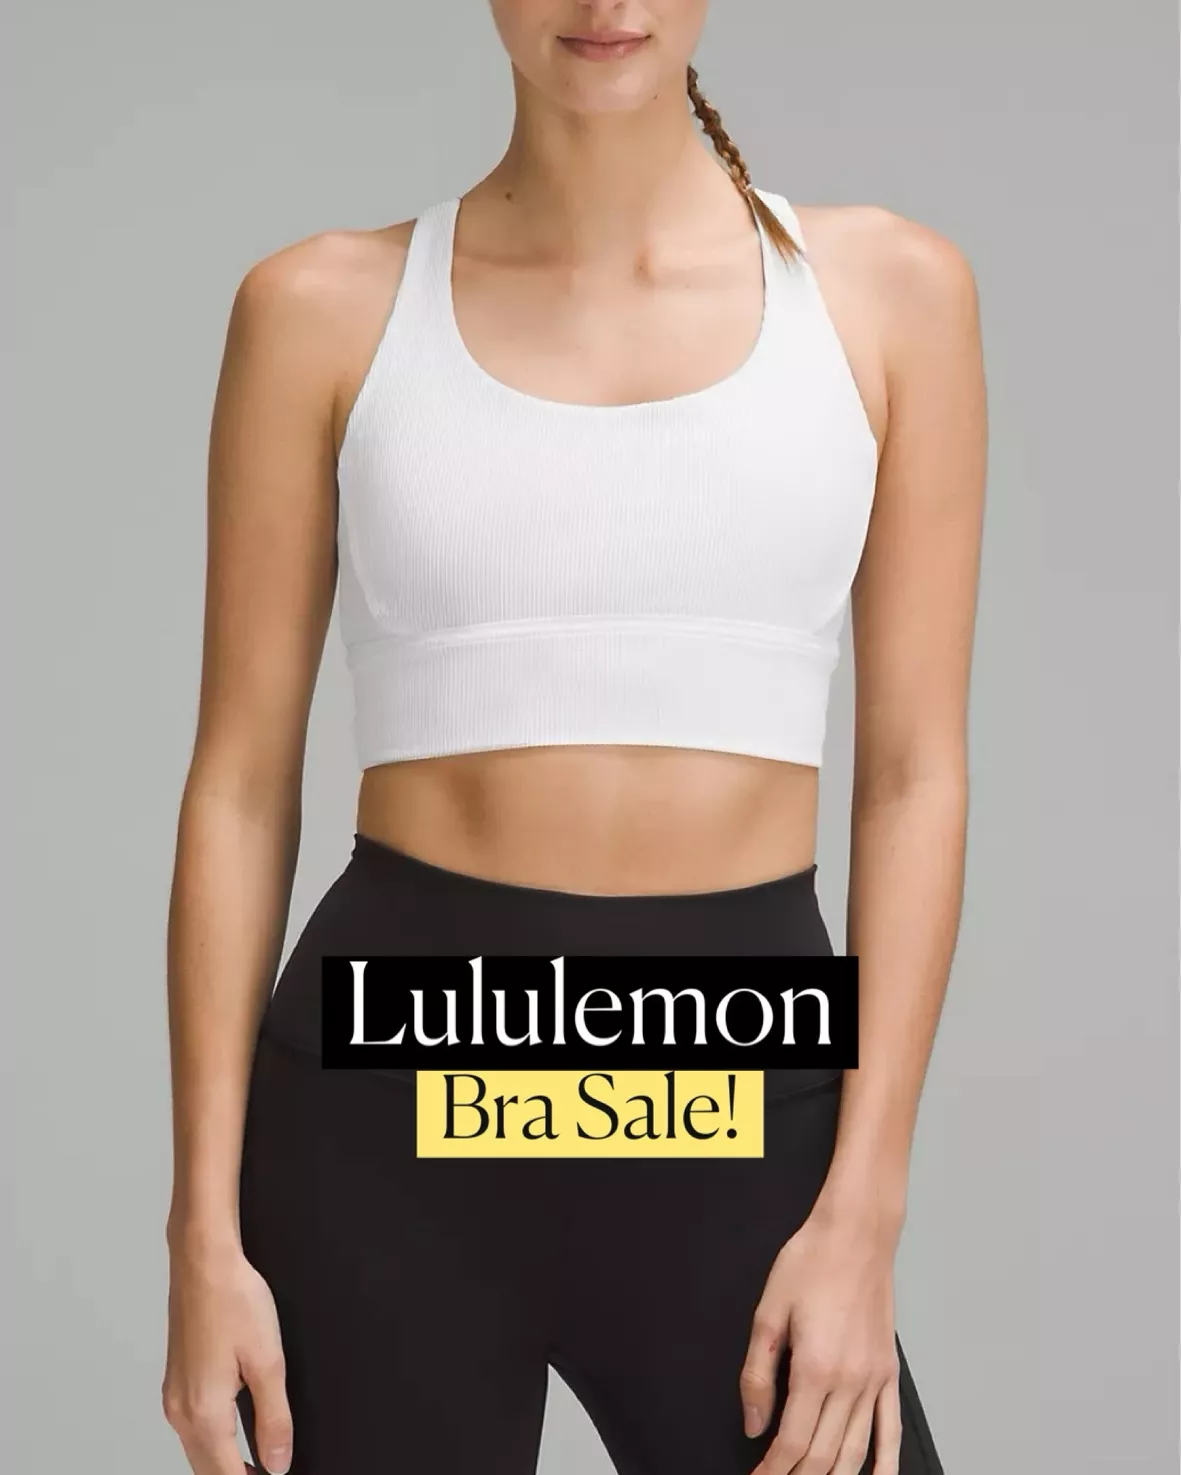 lululemon Energy Longline Bra … curated on LTK